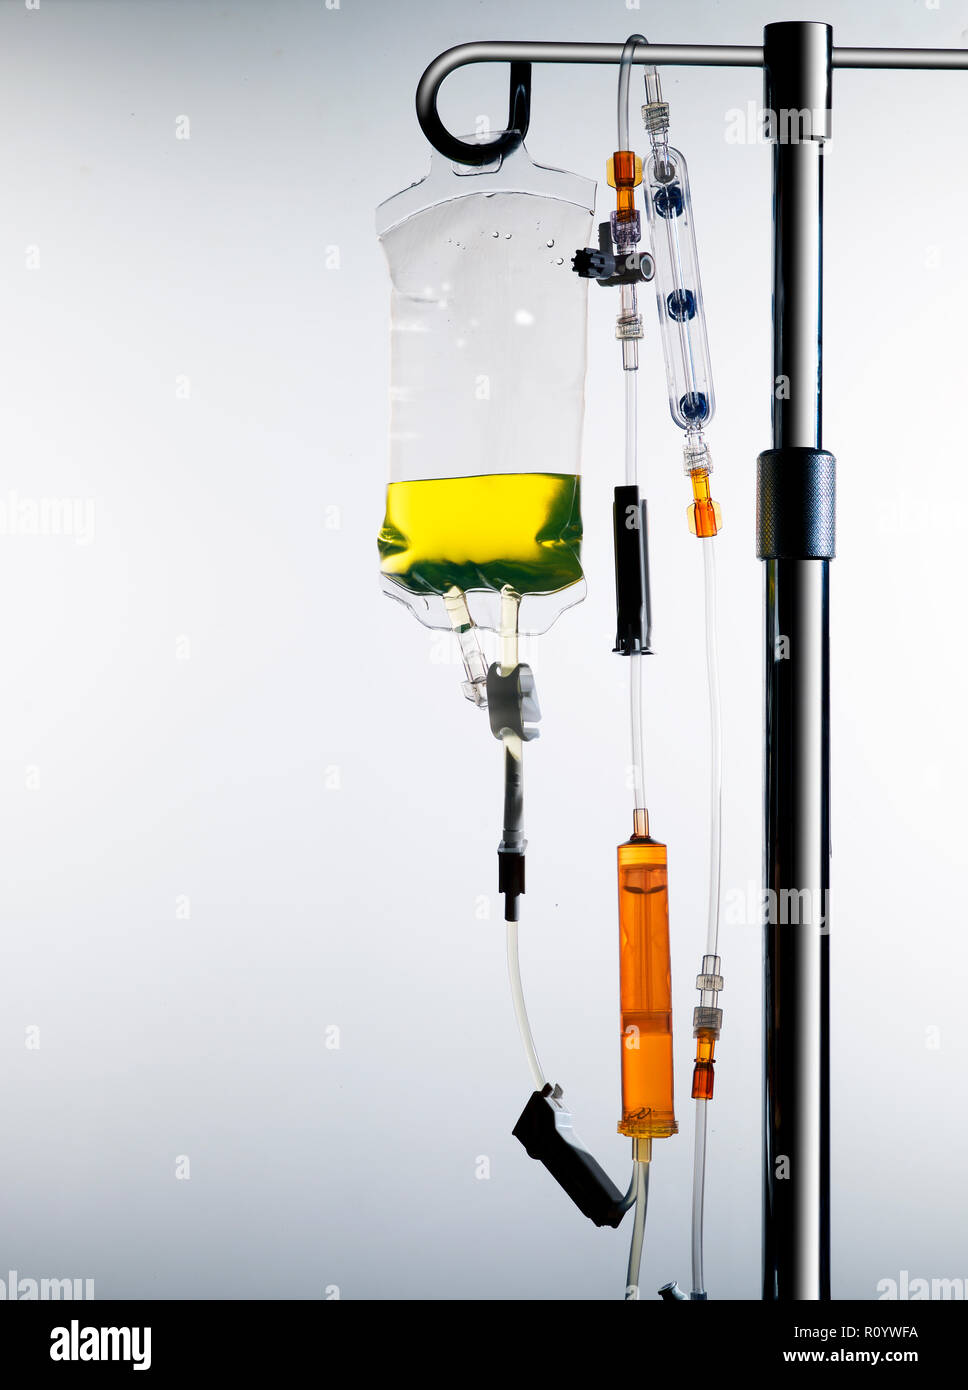 Soporte de goteo intravenoso de drogas con bolsa y líneas intravenosas, equipo médico y tratamiento sanitario Foto de stock